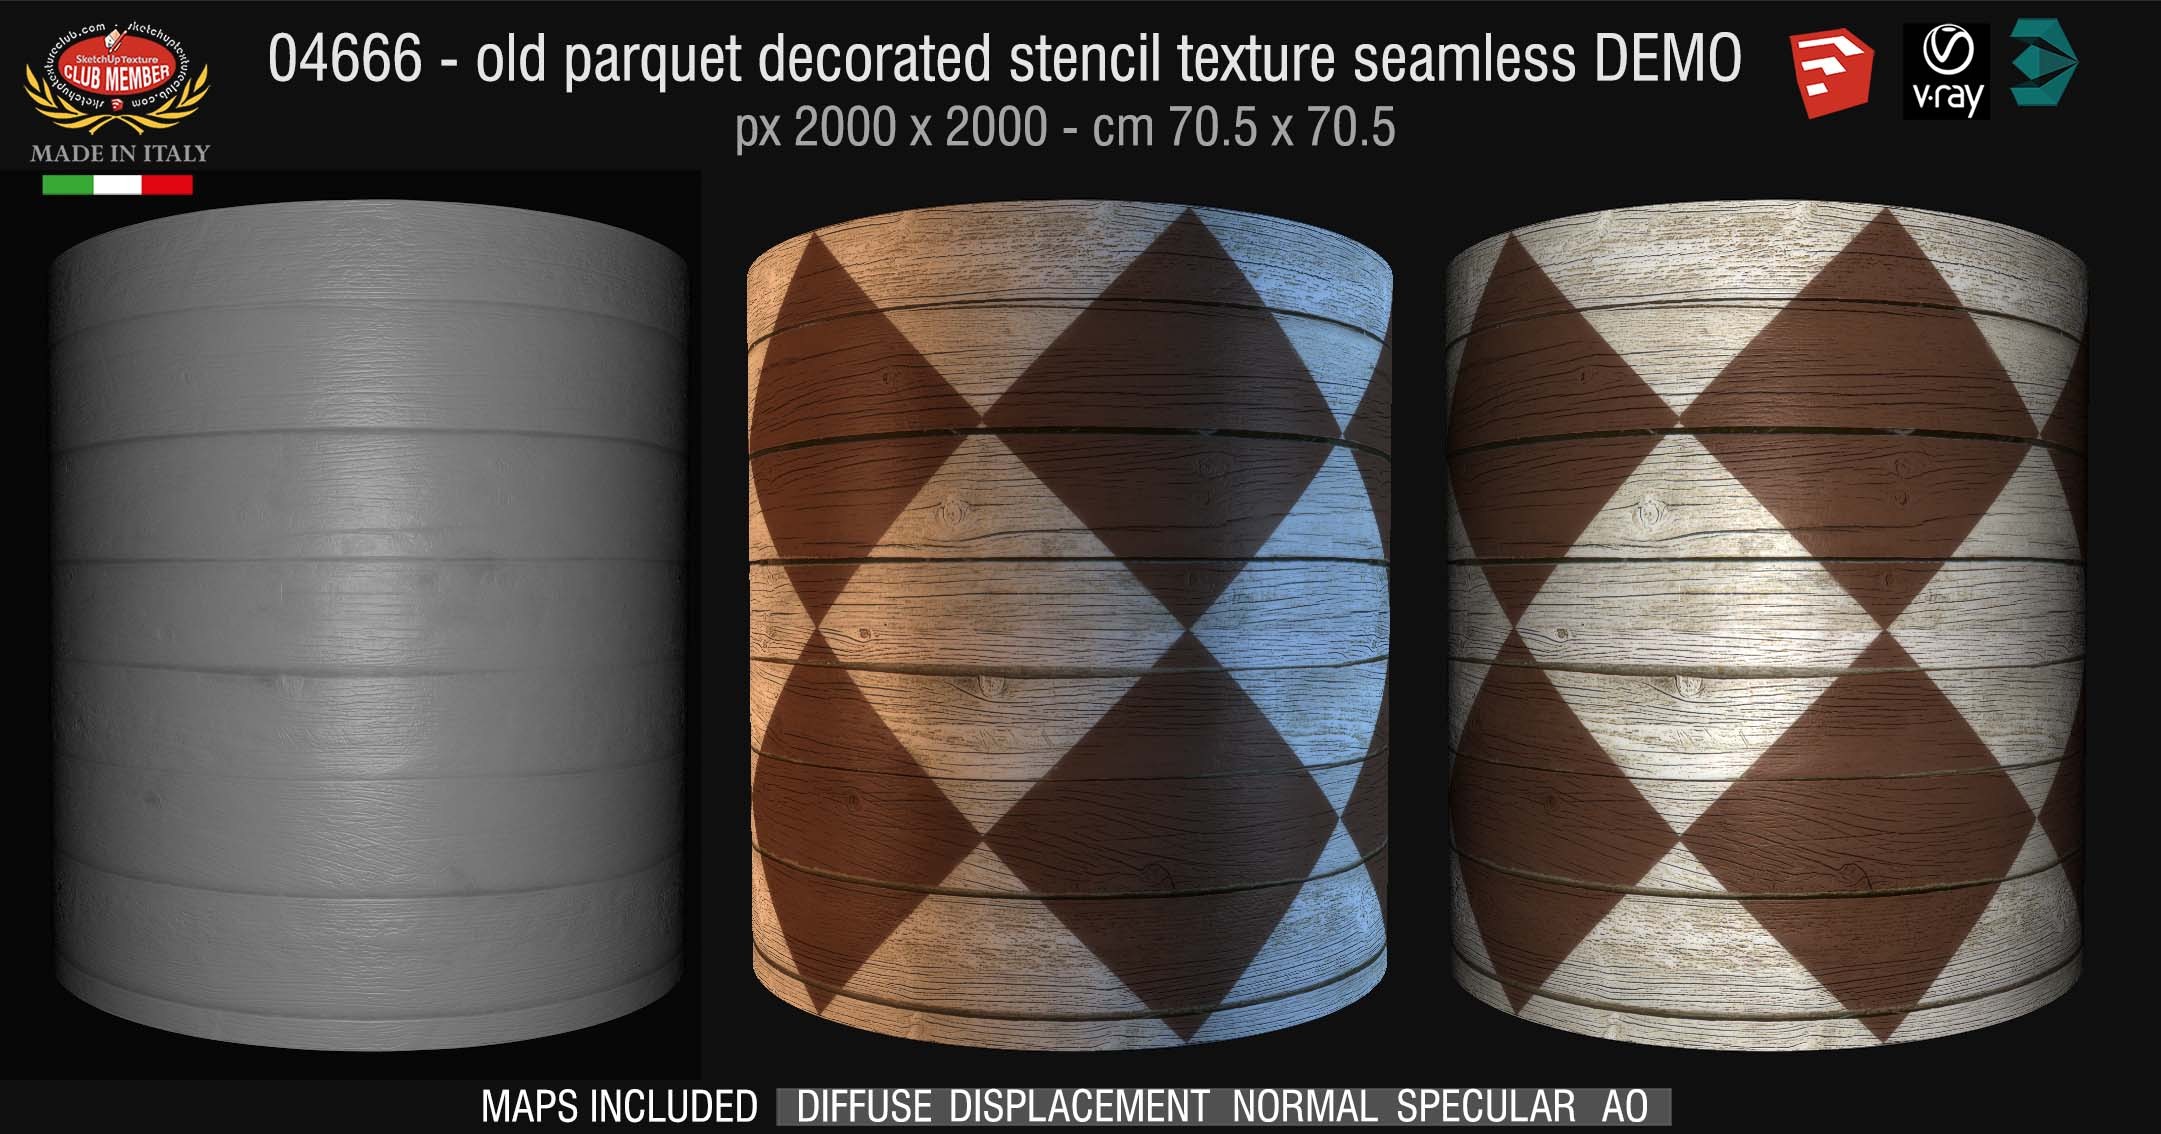 04666 HR Parquet decorated stencil texture seamless + maps DEMO